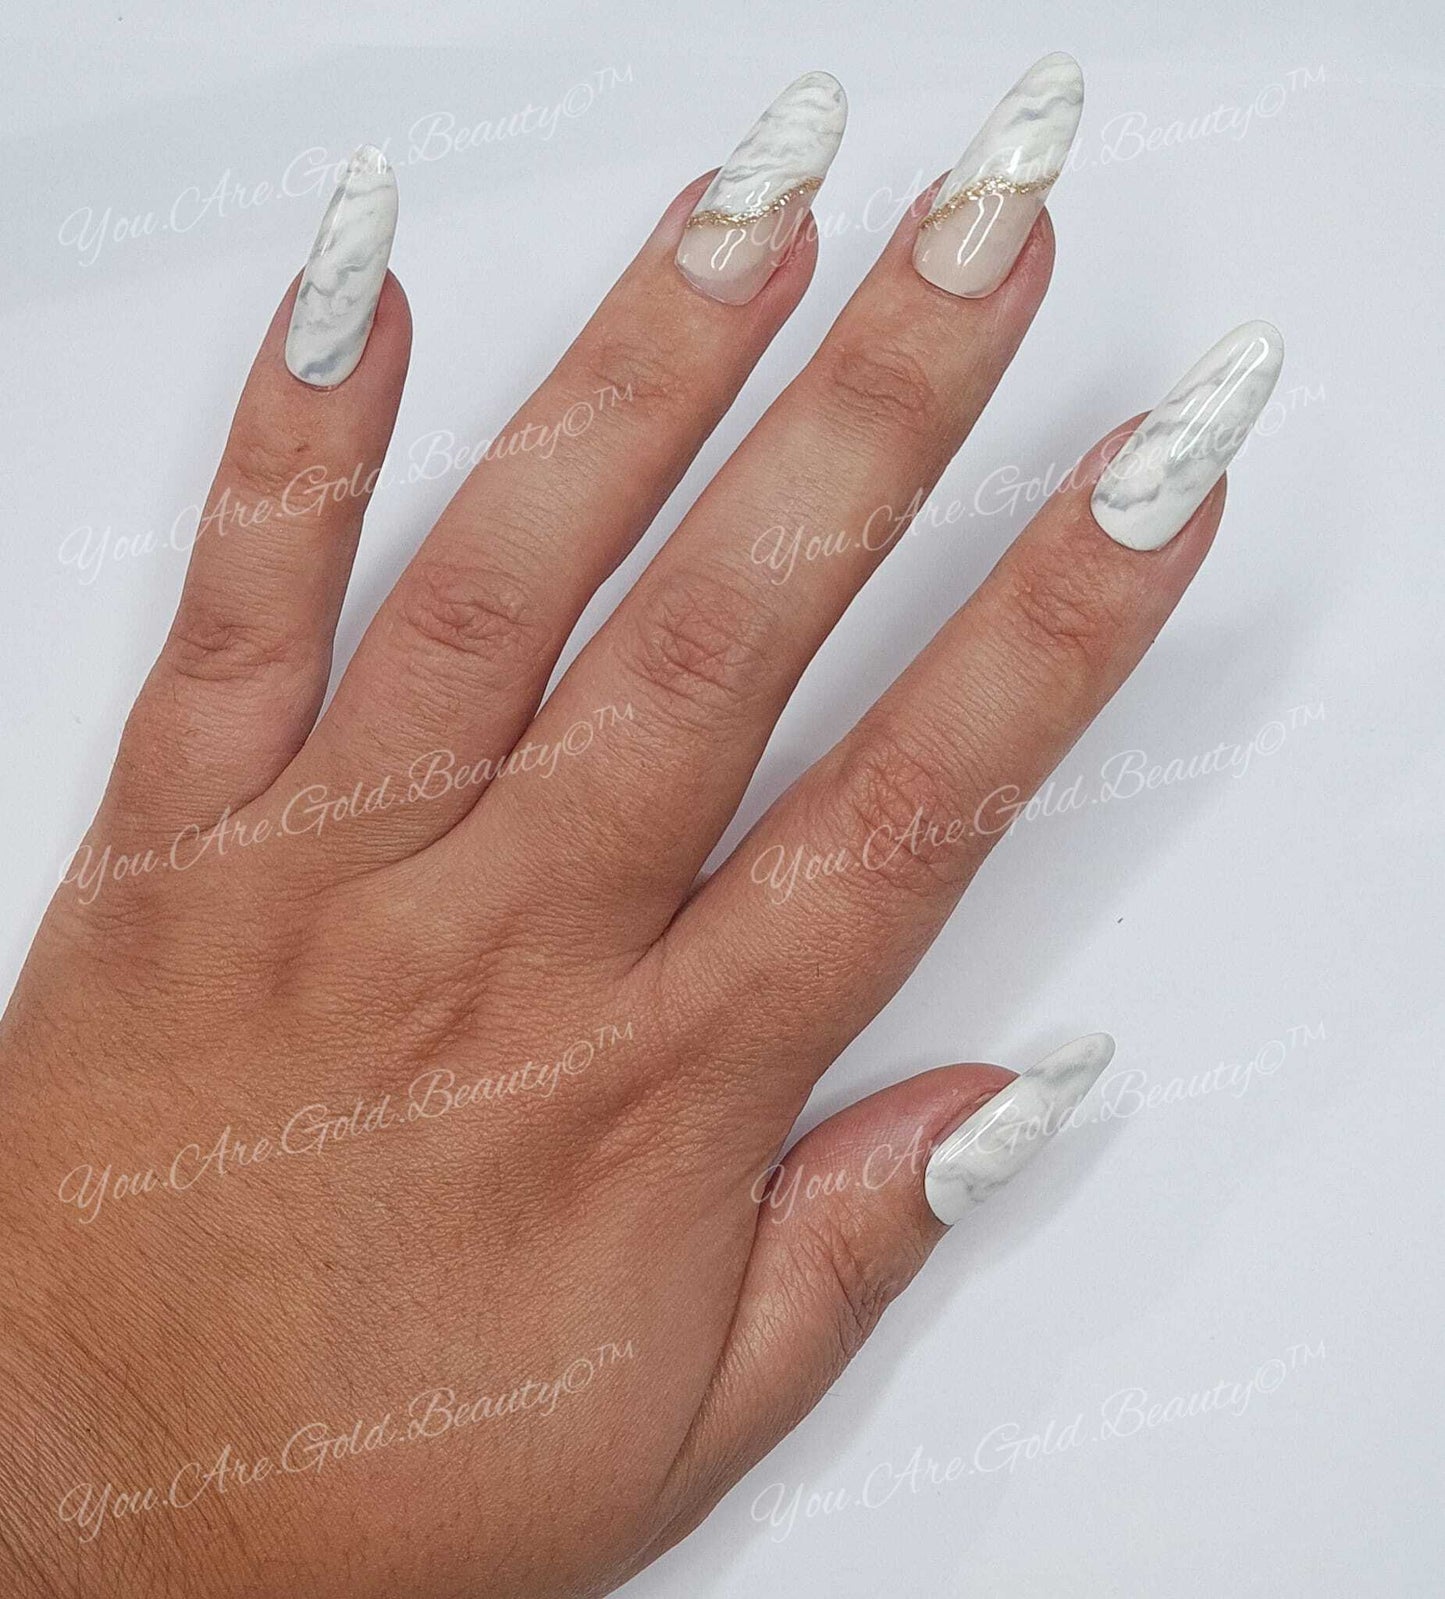 Marble nails design Press on nails uk long almond shaped nails, Marble nail design, coffin nails, russian nails, coffin shaped nails, white nails, press on nails uk, white marble nails